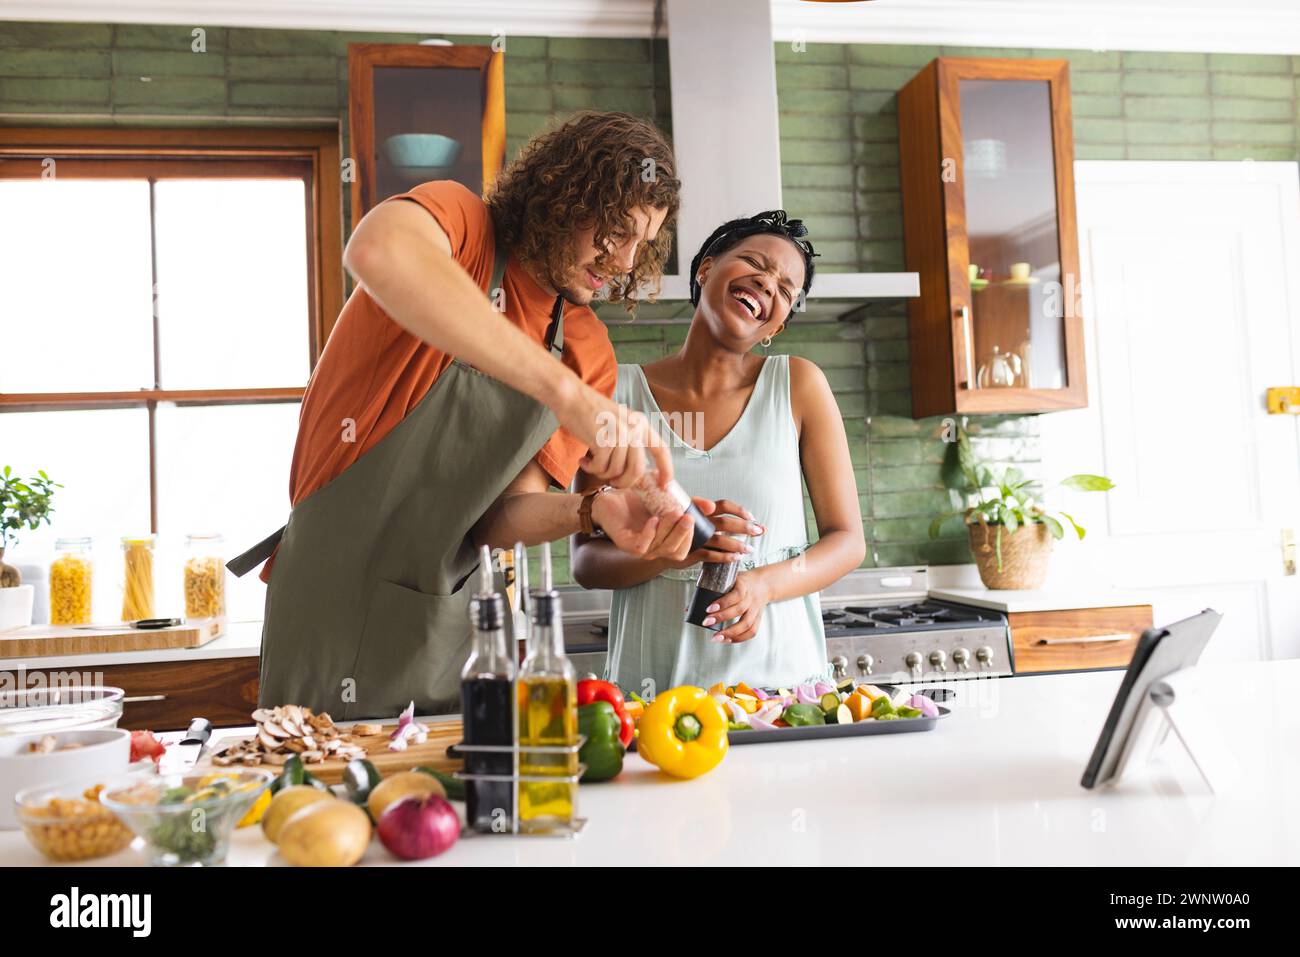 Coppia variegata, giovane donna afroamericana e uomo caucasico ridono mentre cucinano insieme Foto Stock